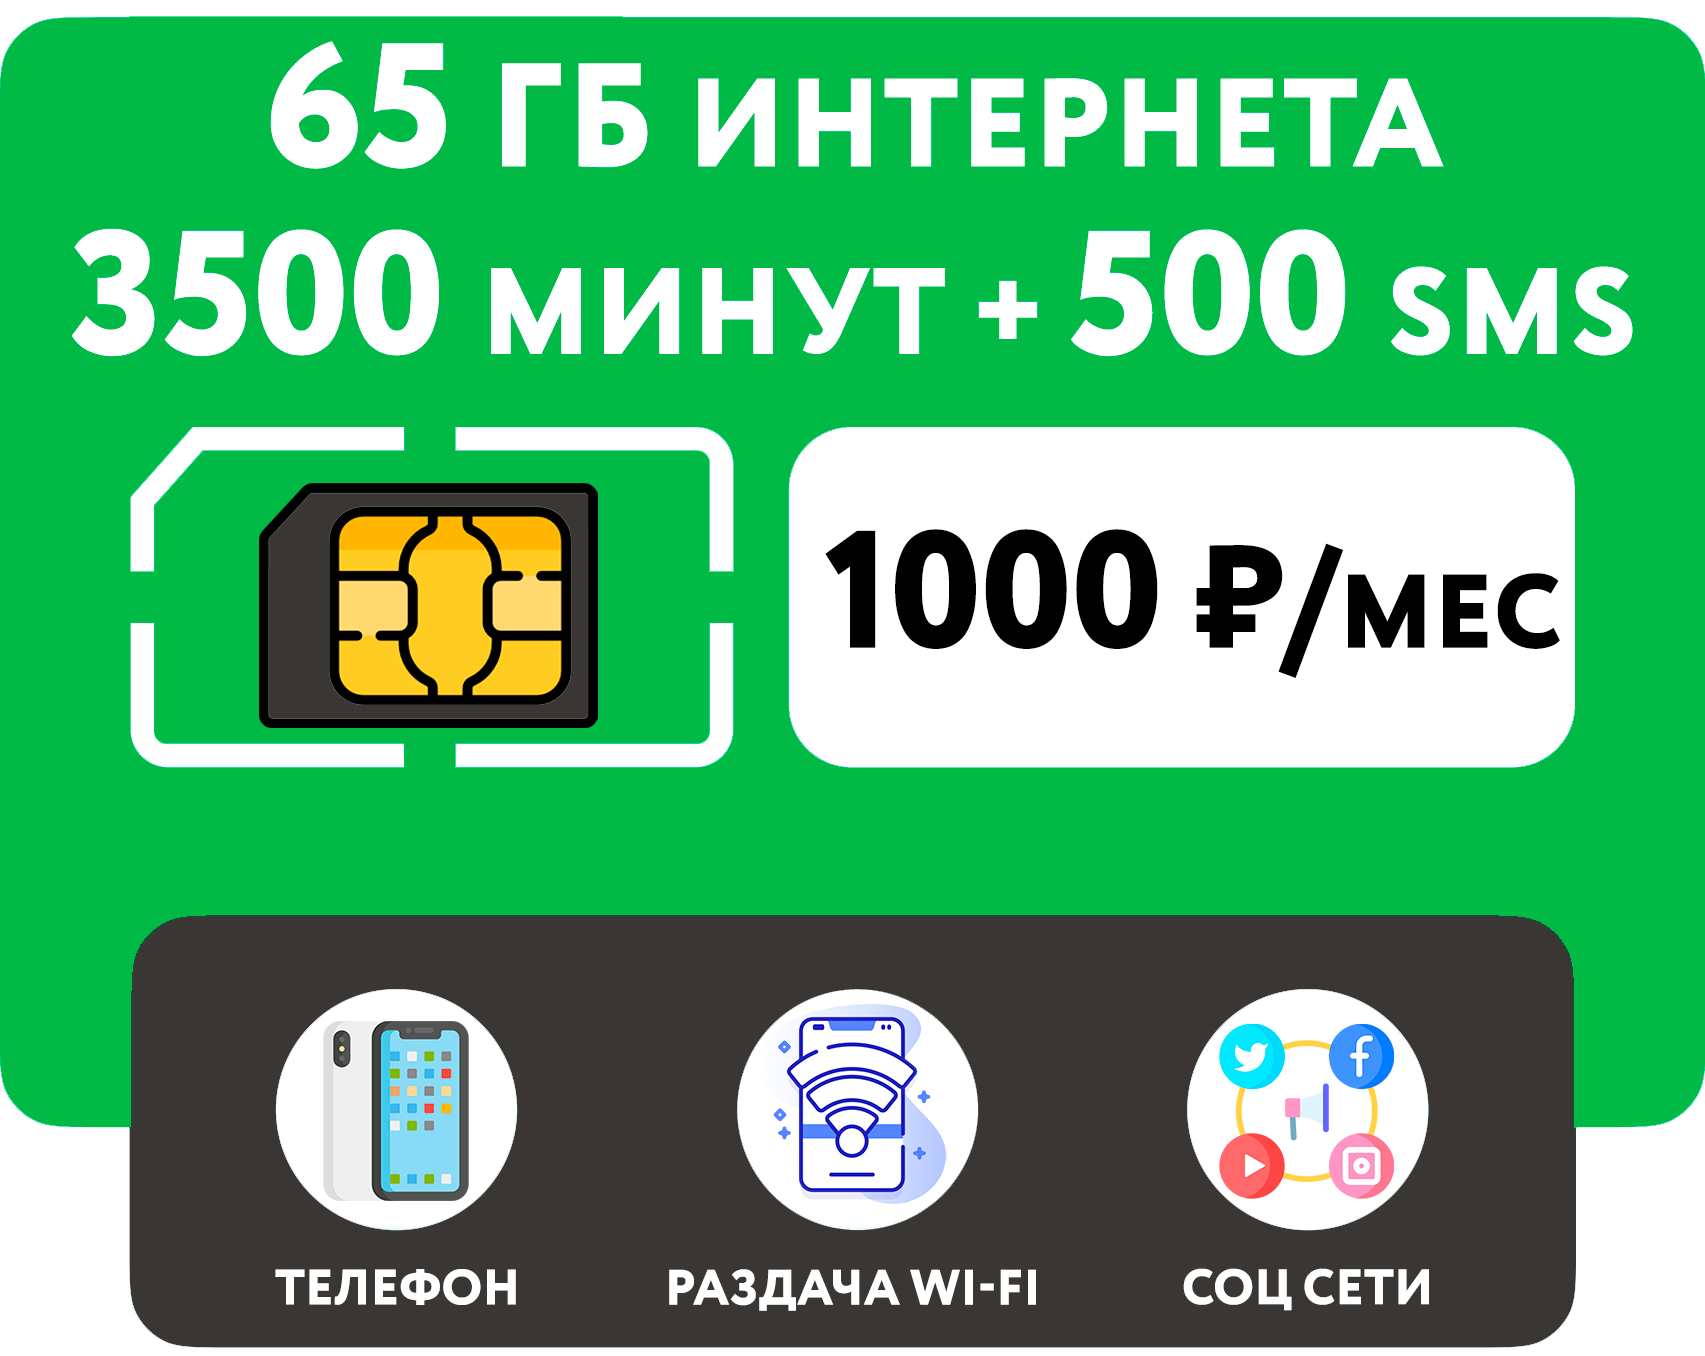 SIM-карта 3500 минут + 65 гб интернета 3G/4G + 500 СМС за 1000 руб/мес (смартфон) + безлимит на мессенджеры (Москва и область)